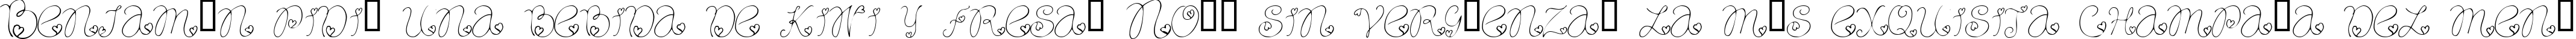 Пример написания шрифтом Craftopia Love текста на испанском